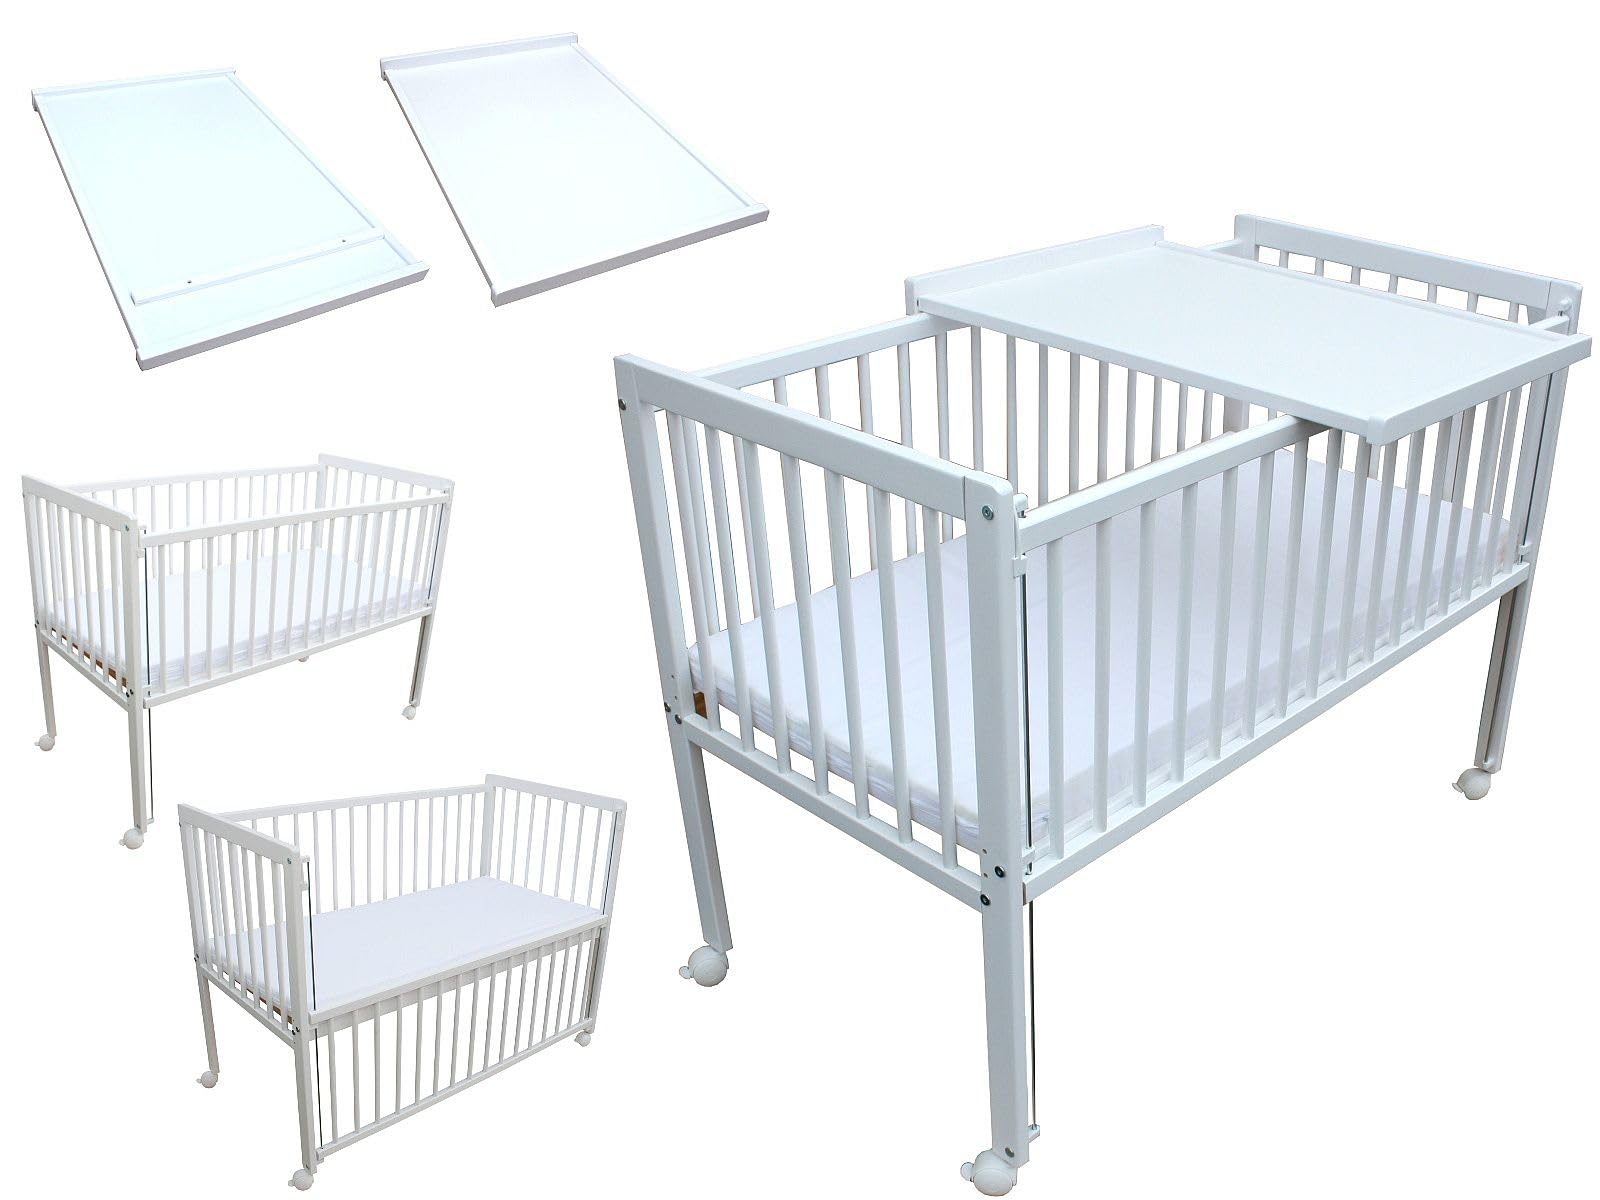 Micoland Kinderbett/Beistellbett/Babybett 2in1 120x60cm mit Matratze und Wickelbrett weiß